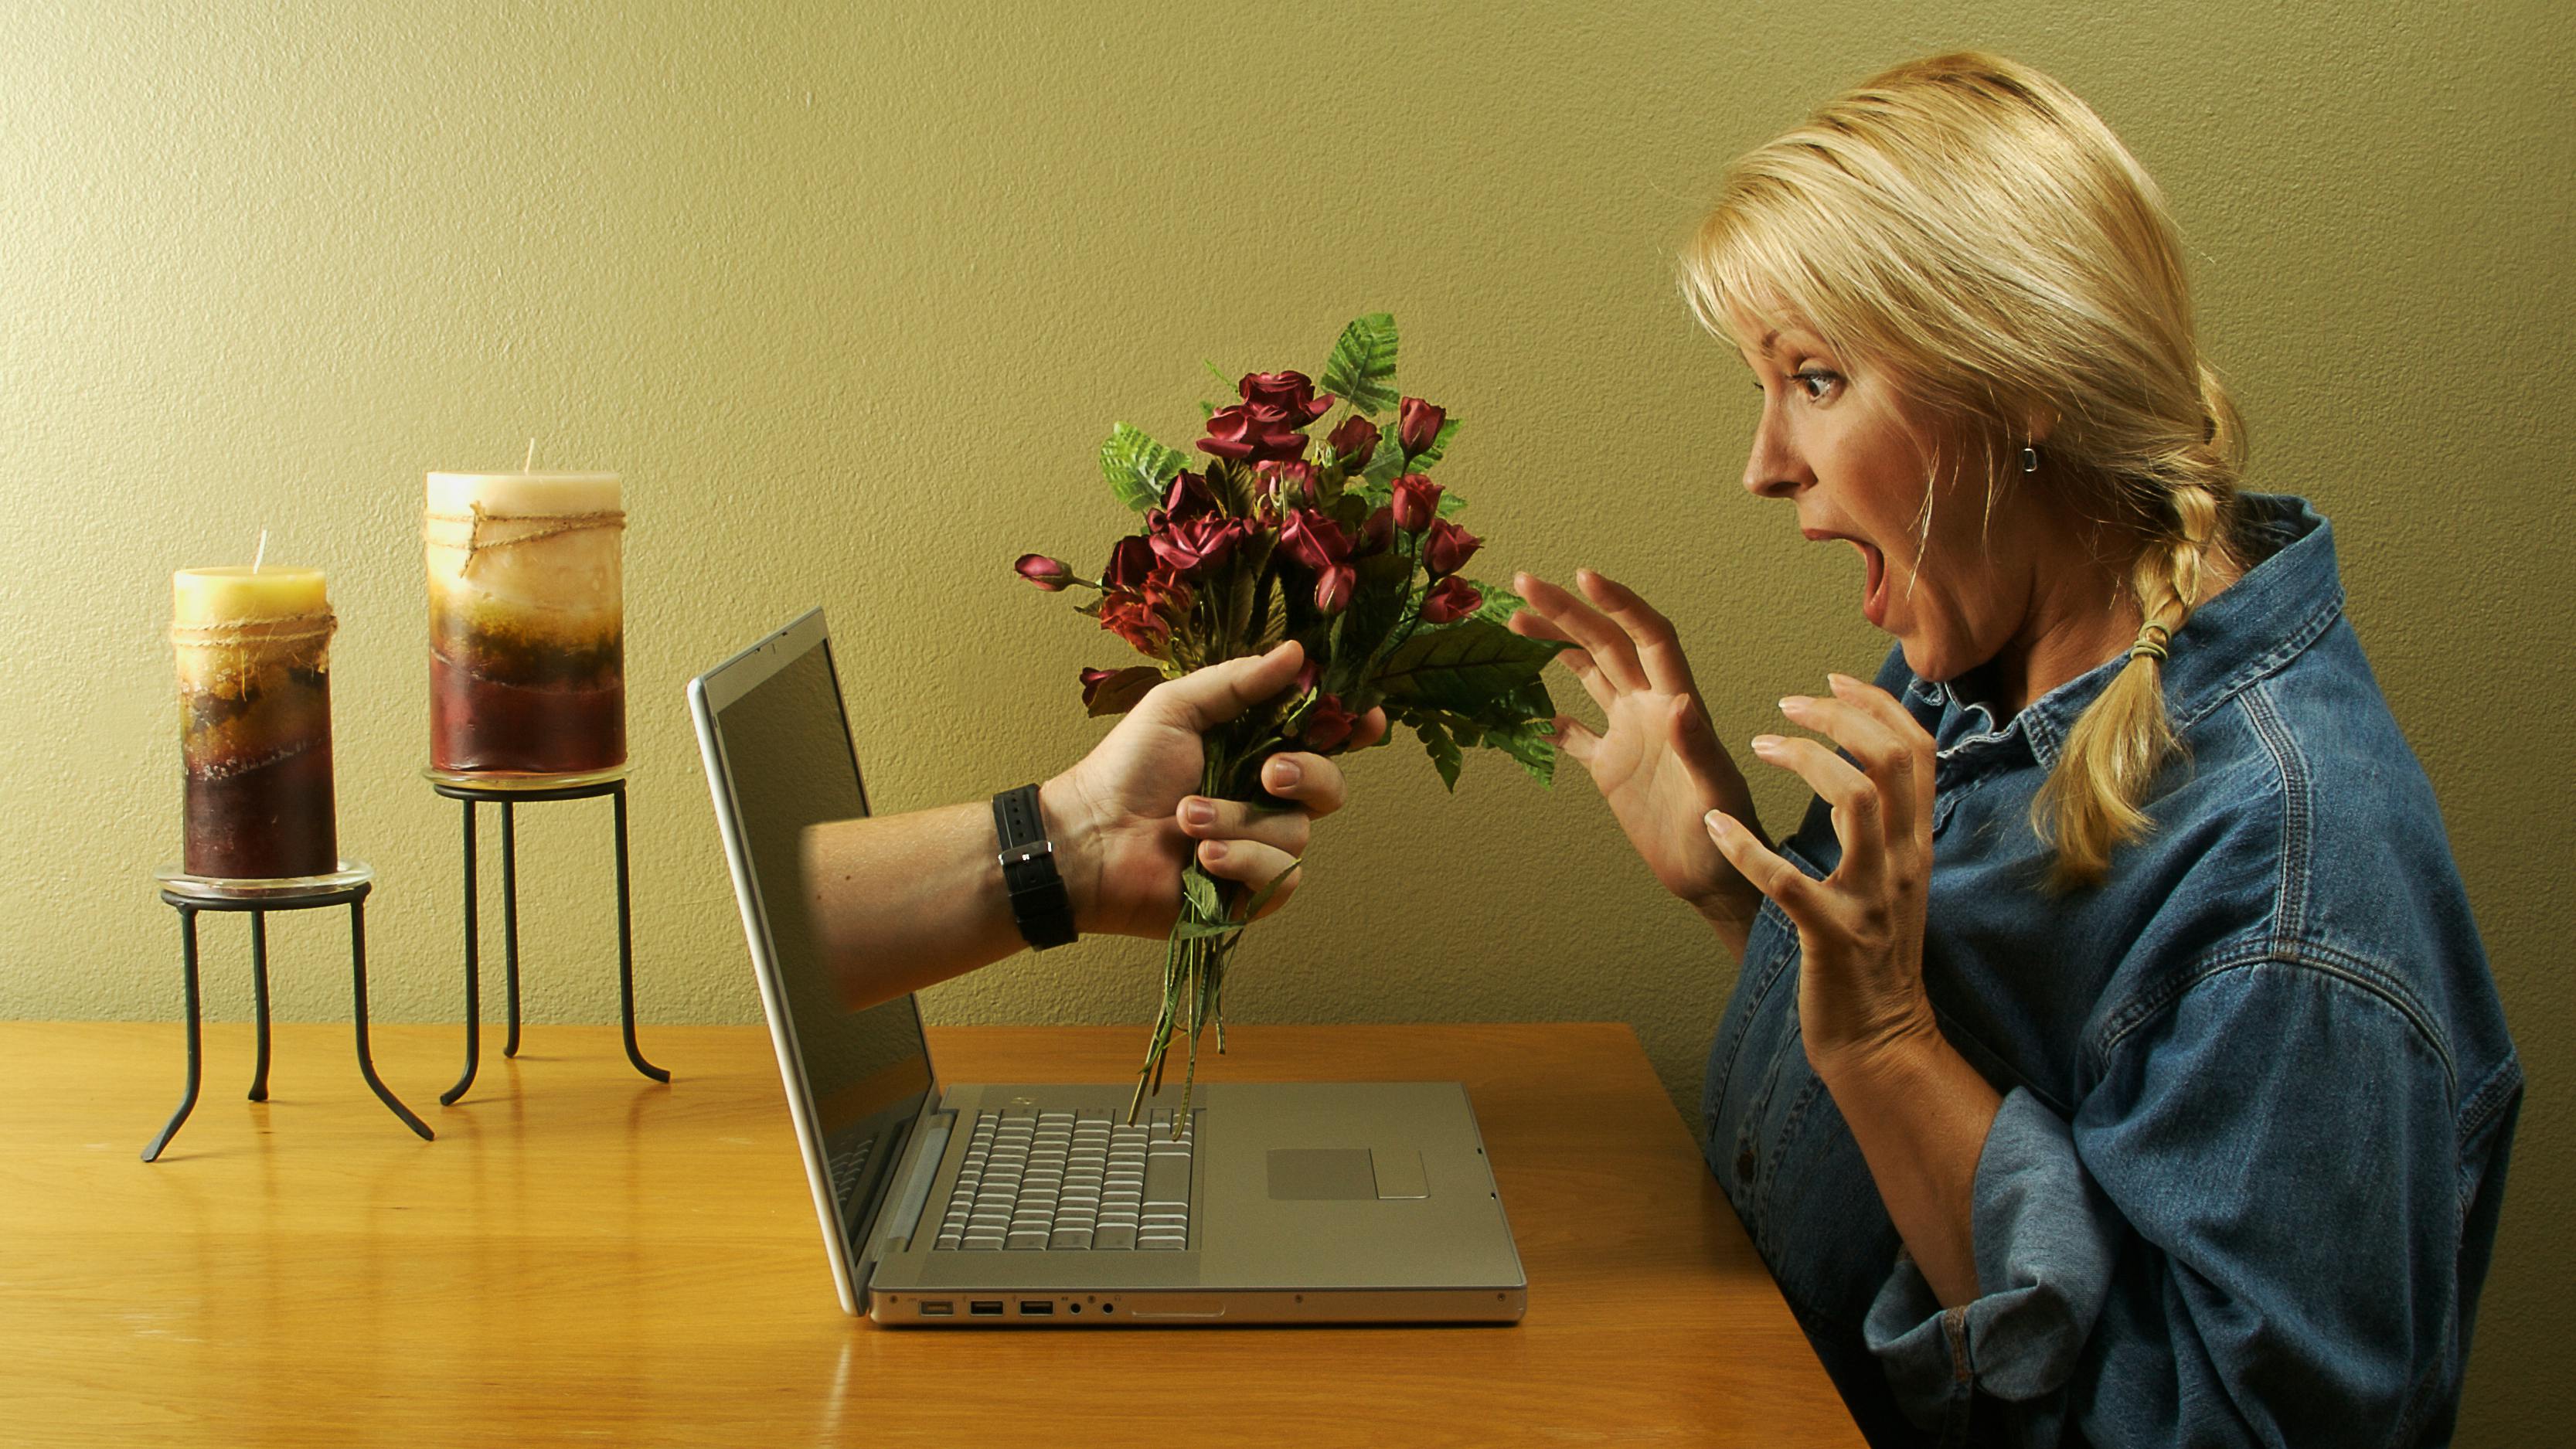 Есть простое знакомство. Виртуальная любовь. Женщина в интернете. Разговор в интернете. Отношения в инете.